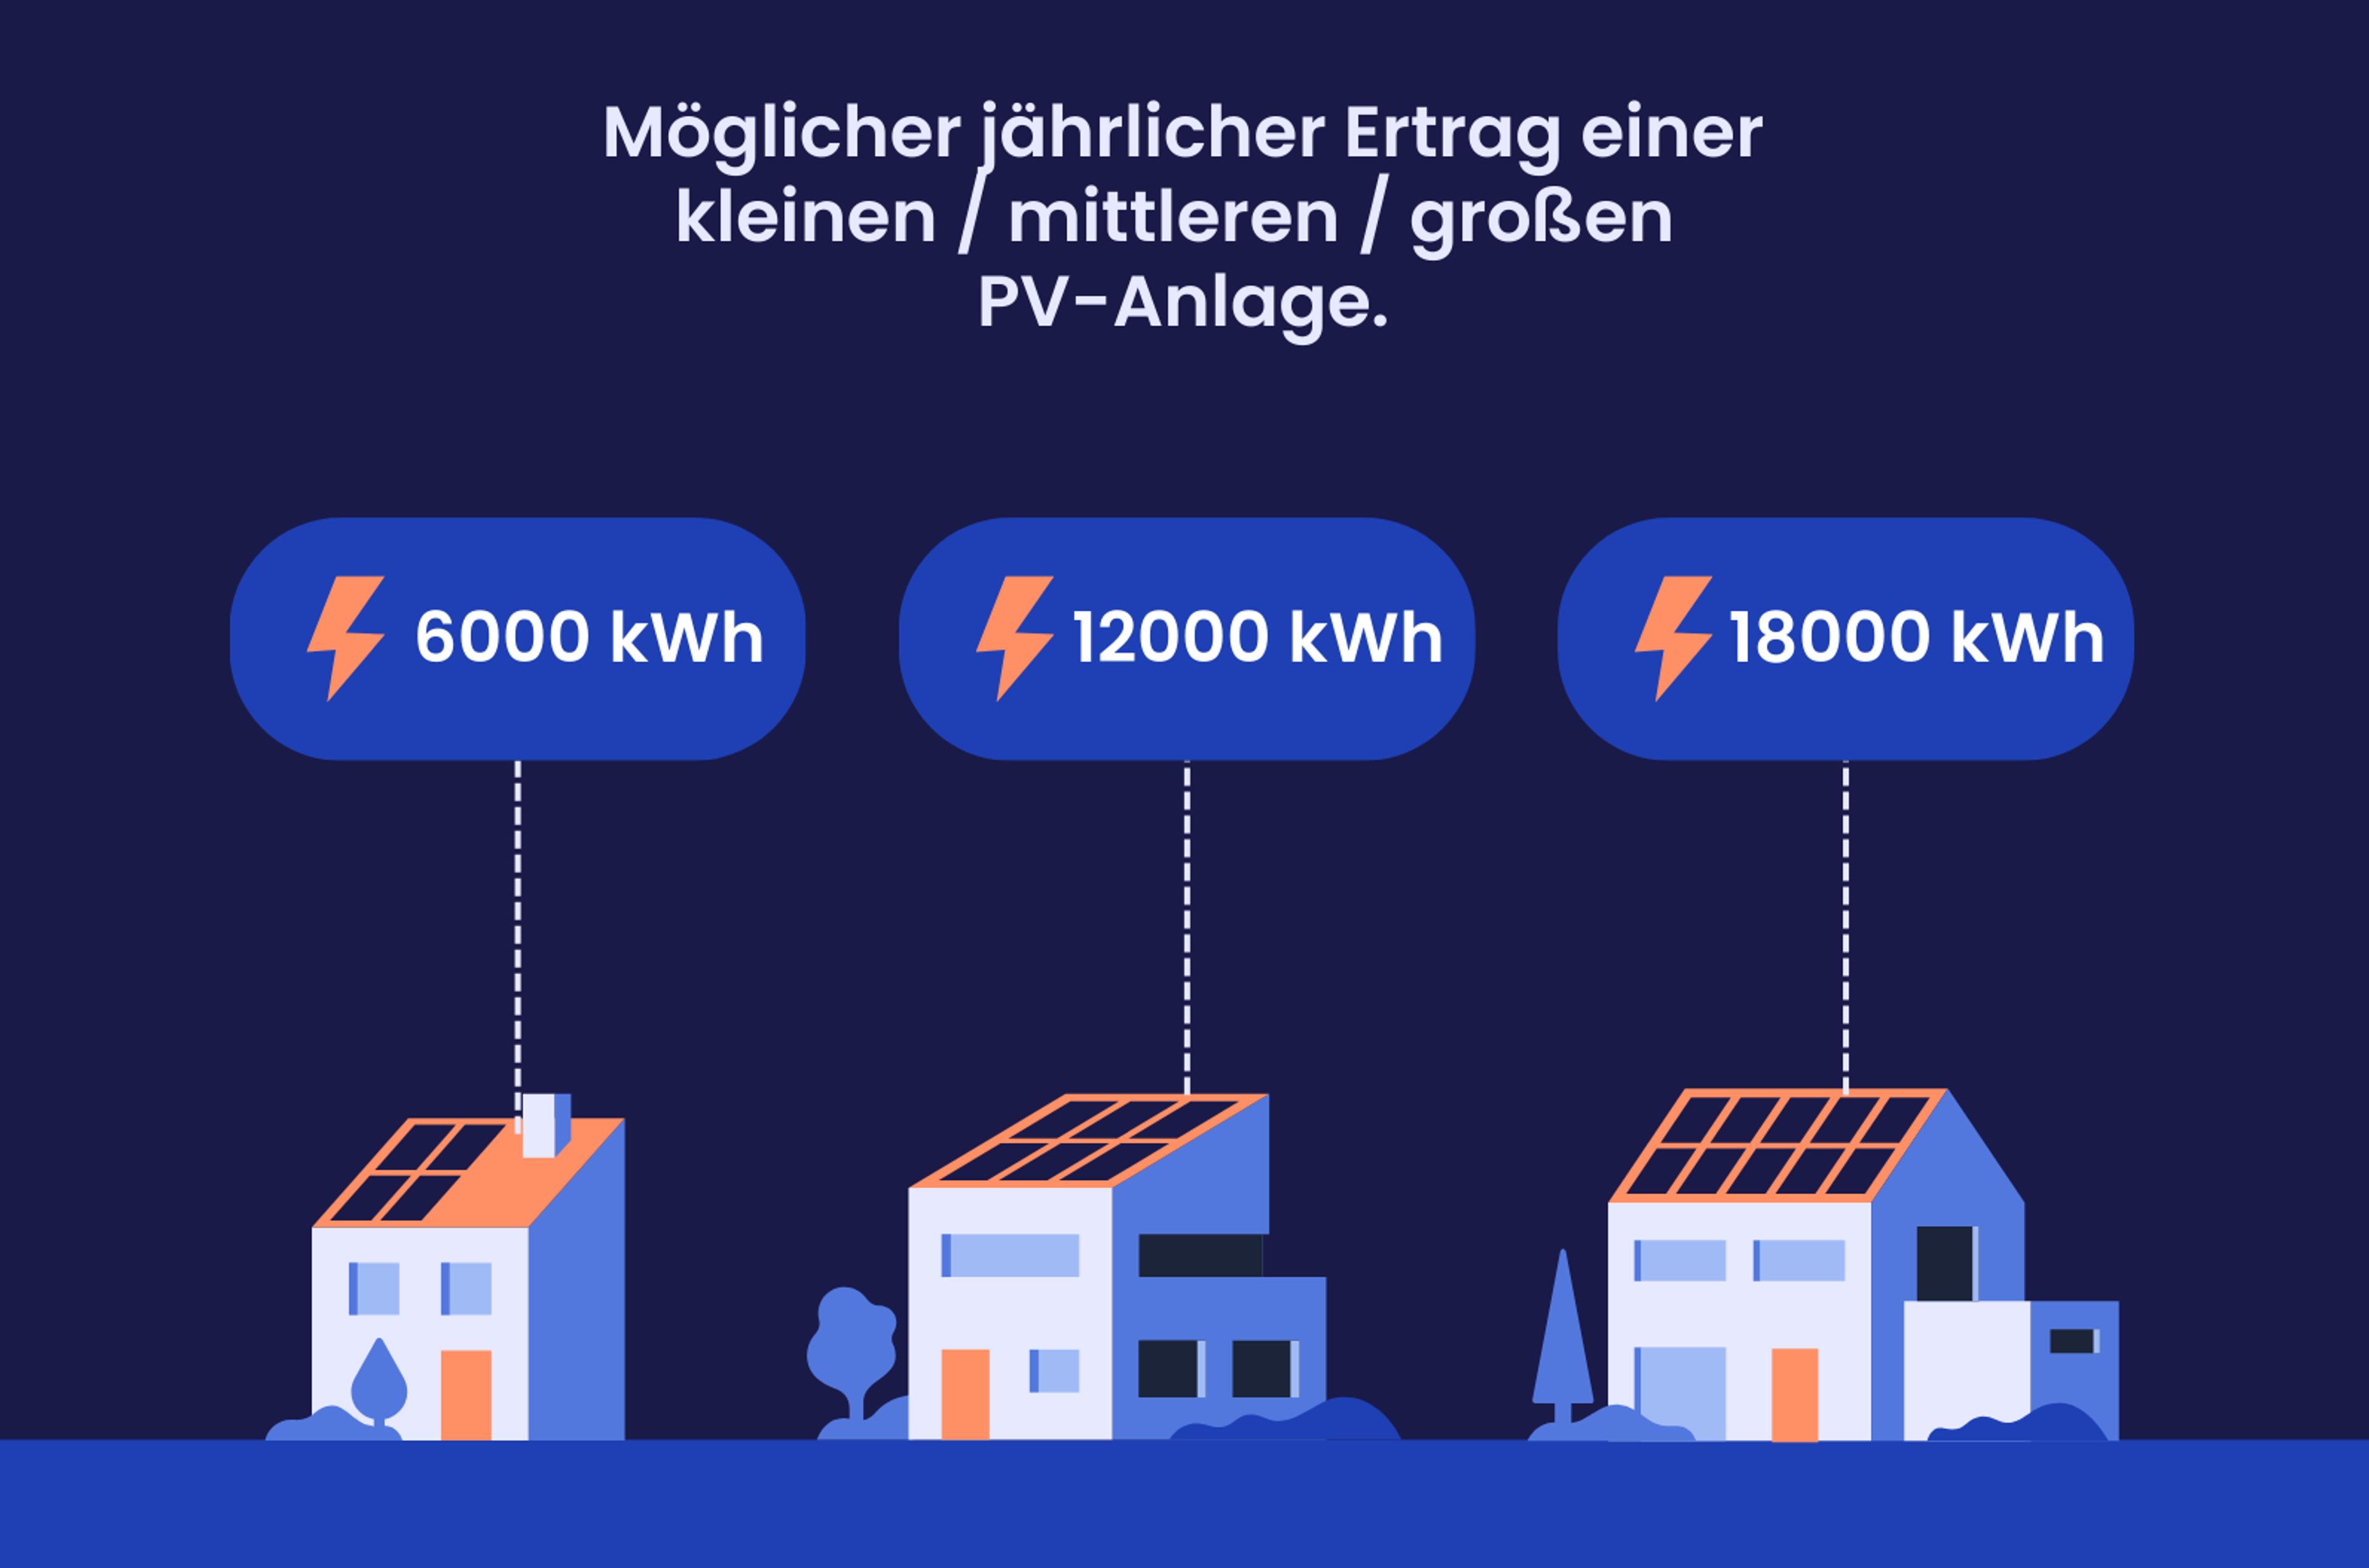 Eine Grafik, die zeigt, wie viele kWh Solaranlagen im Saarland erzeugen können.